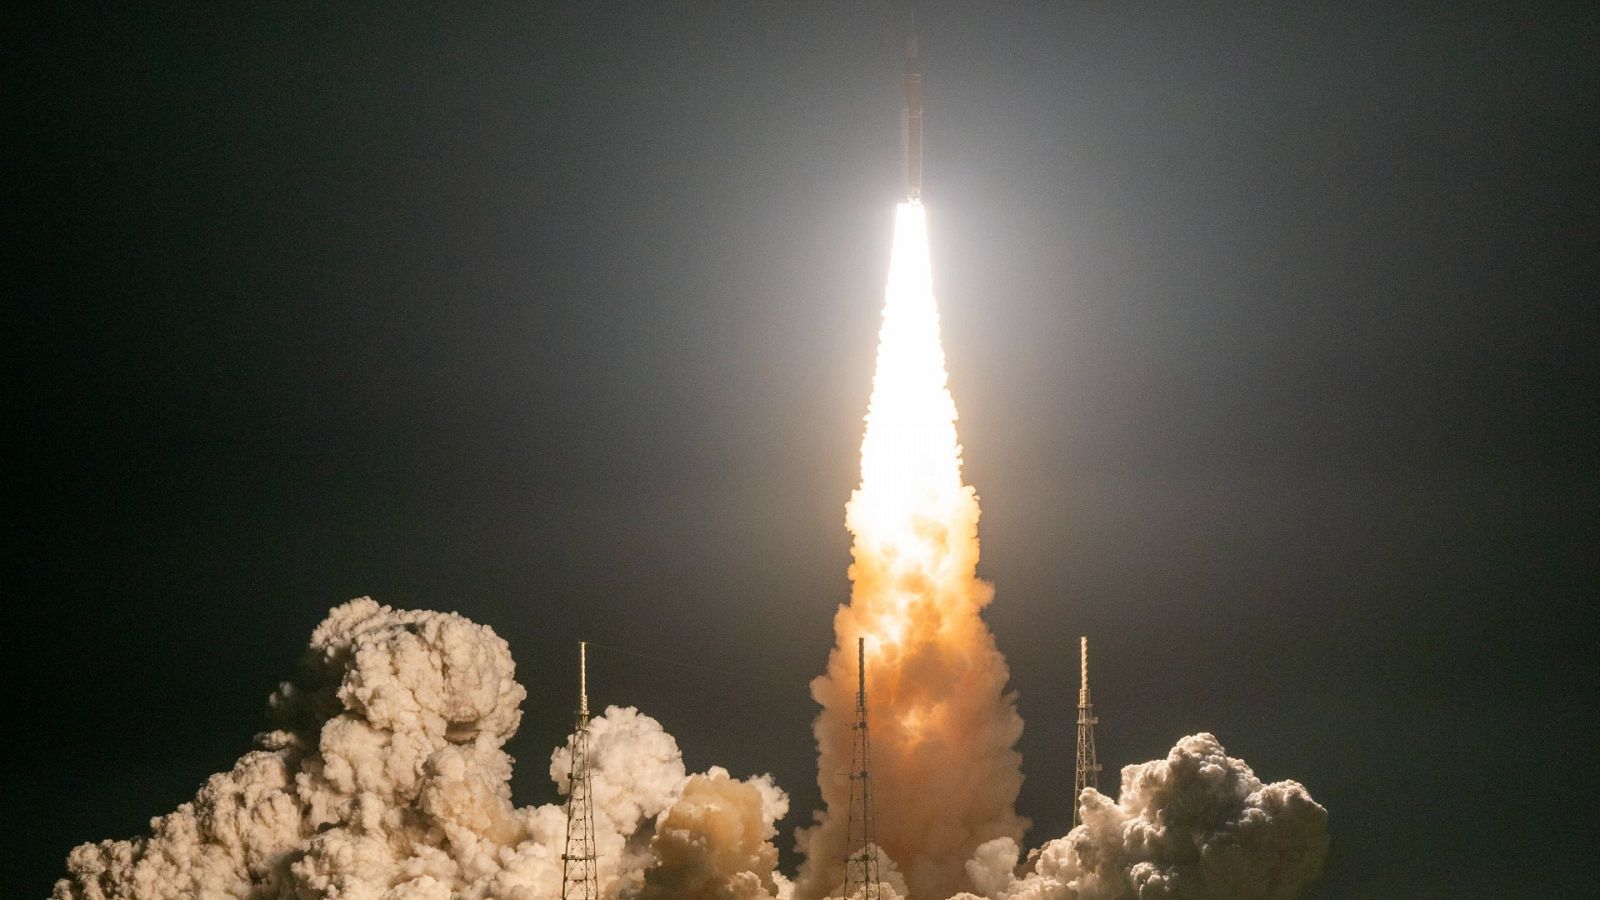 24 horas - Jordi Sandalinas, experto en derecho espacial: "Estamos viviendo un boom sin precedentes a nivel espacial" - Escuchar ahora